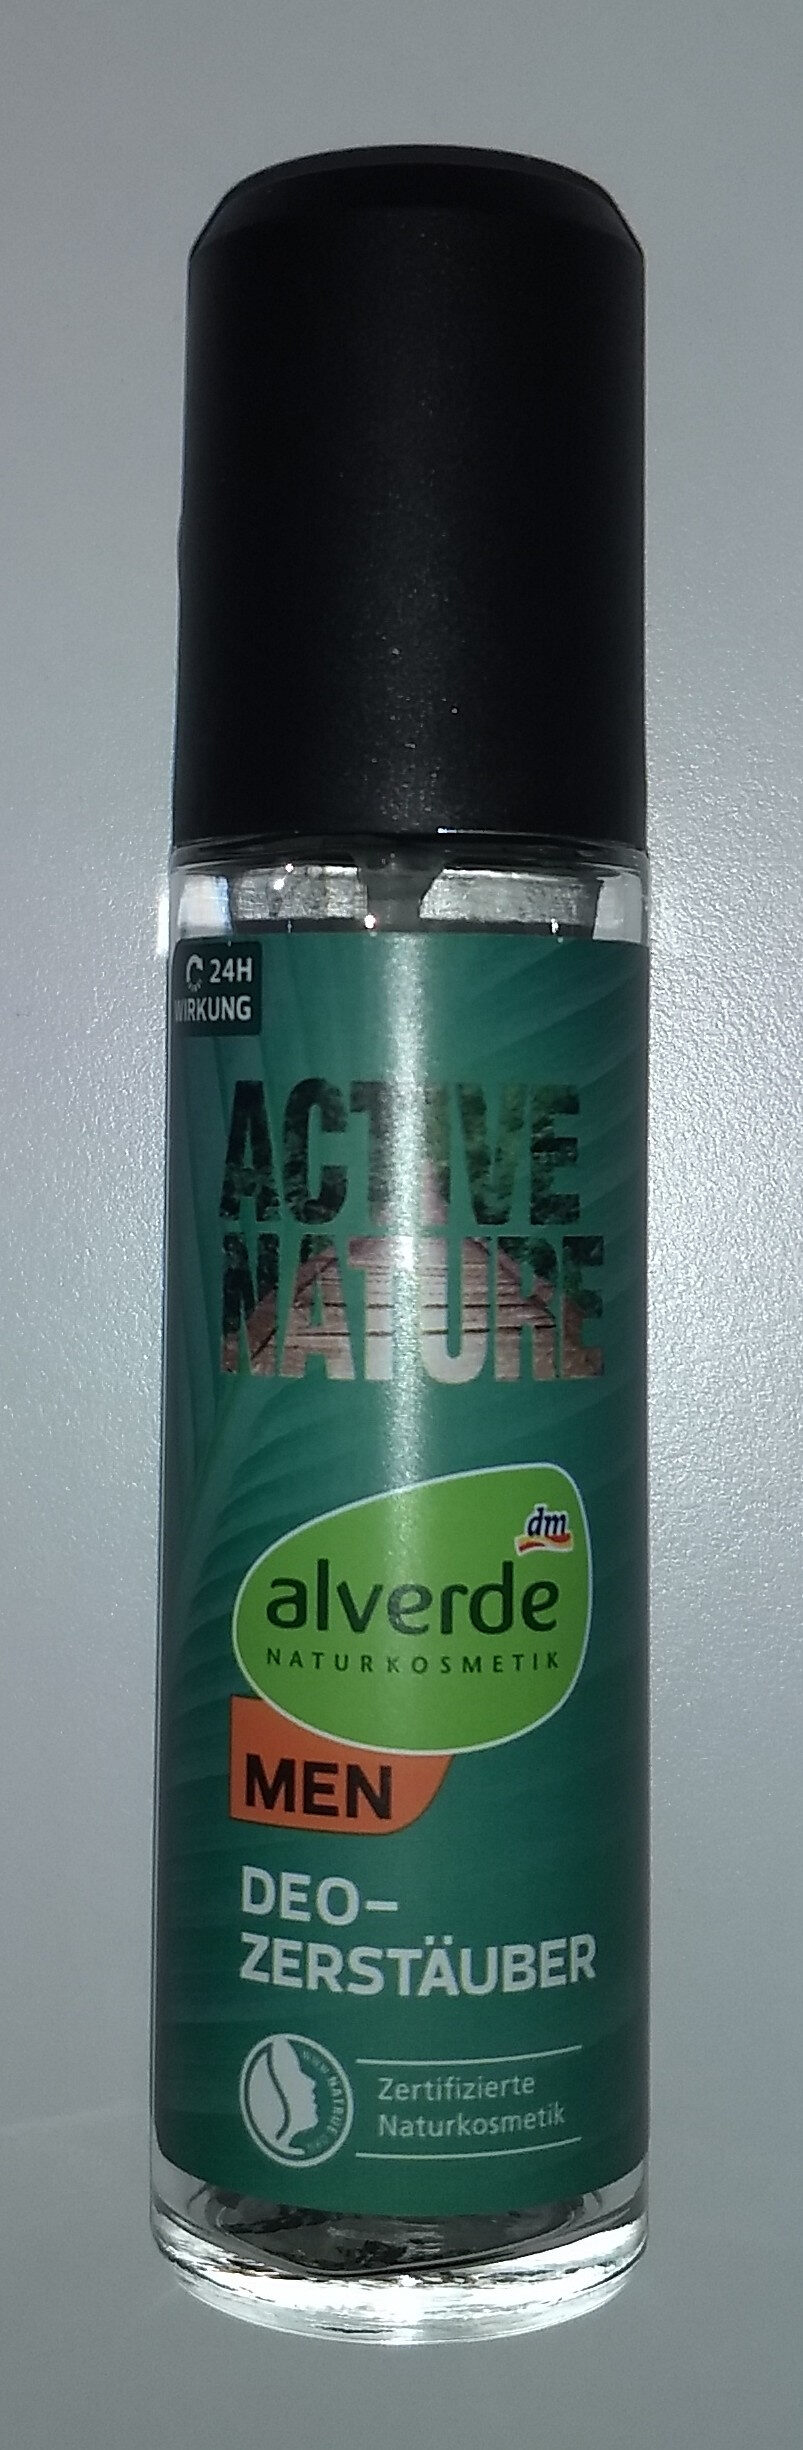 Active nature men deo Zerstäuber - Produkt - de